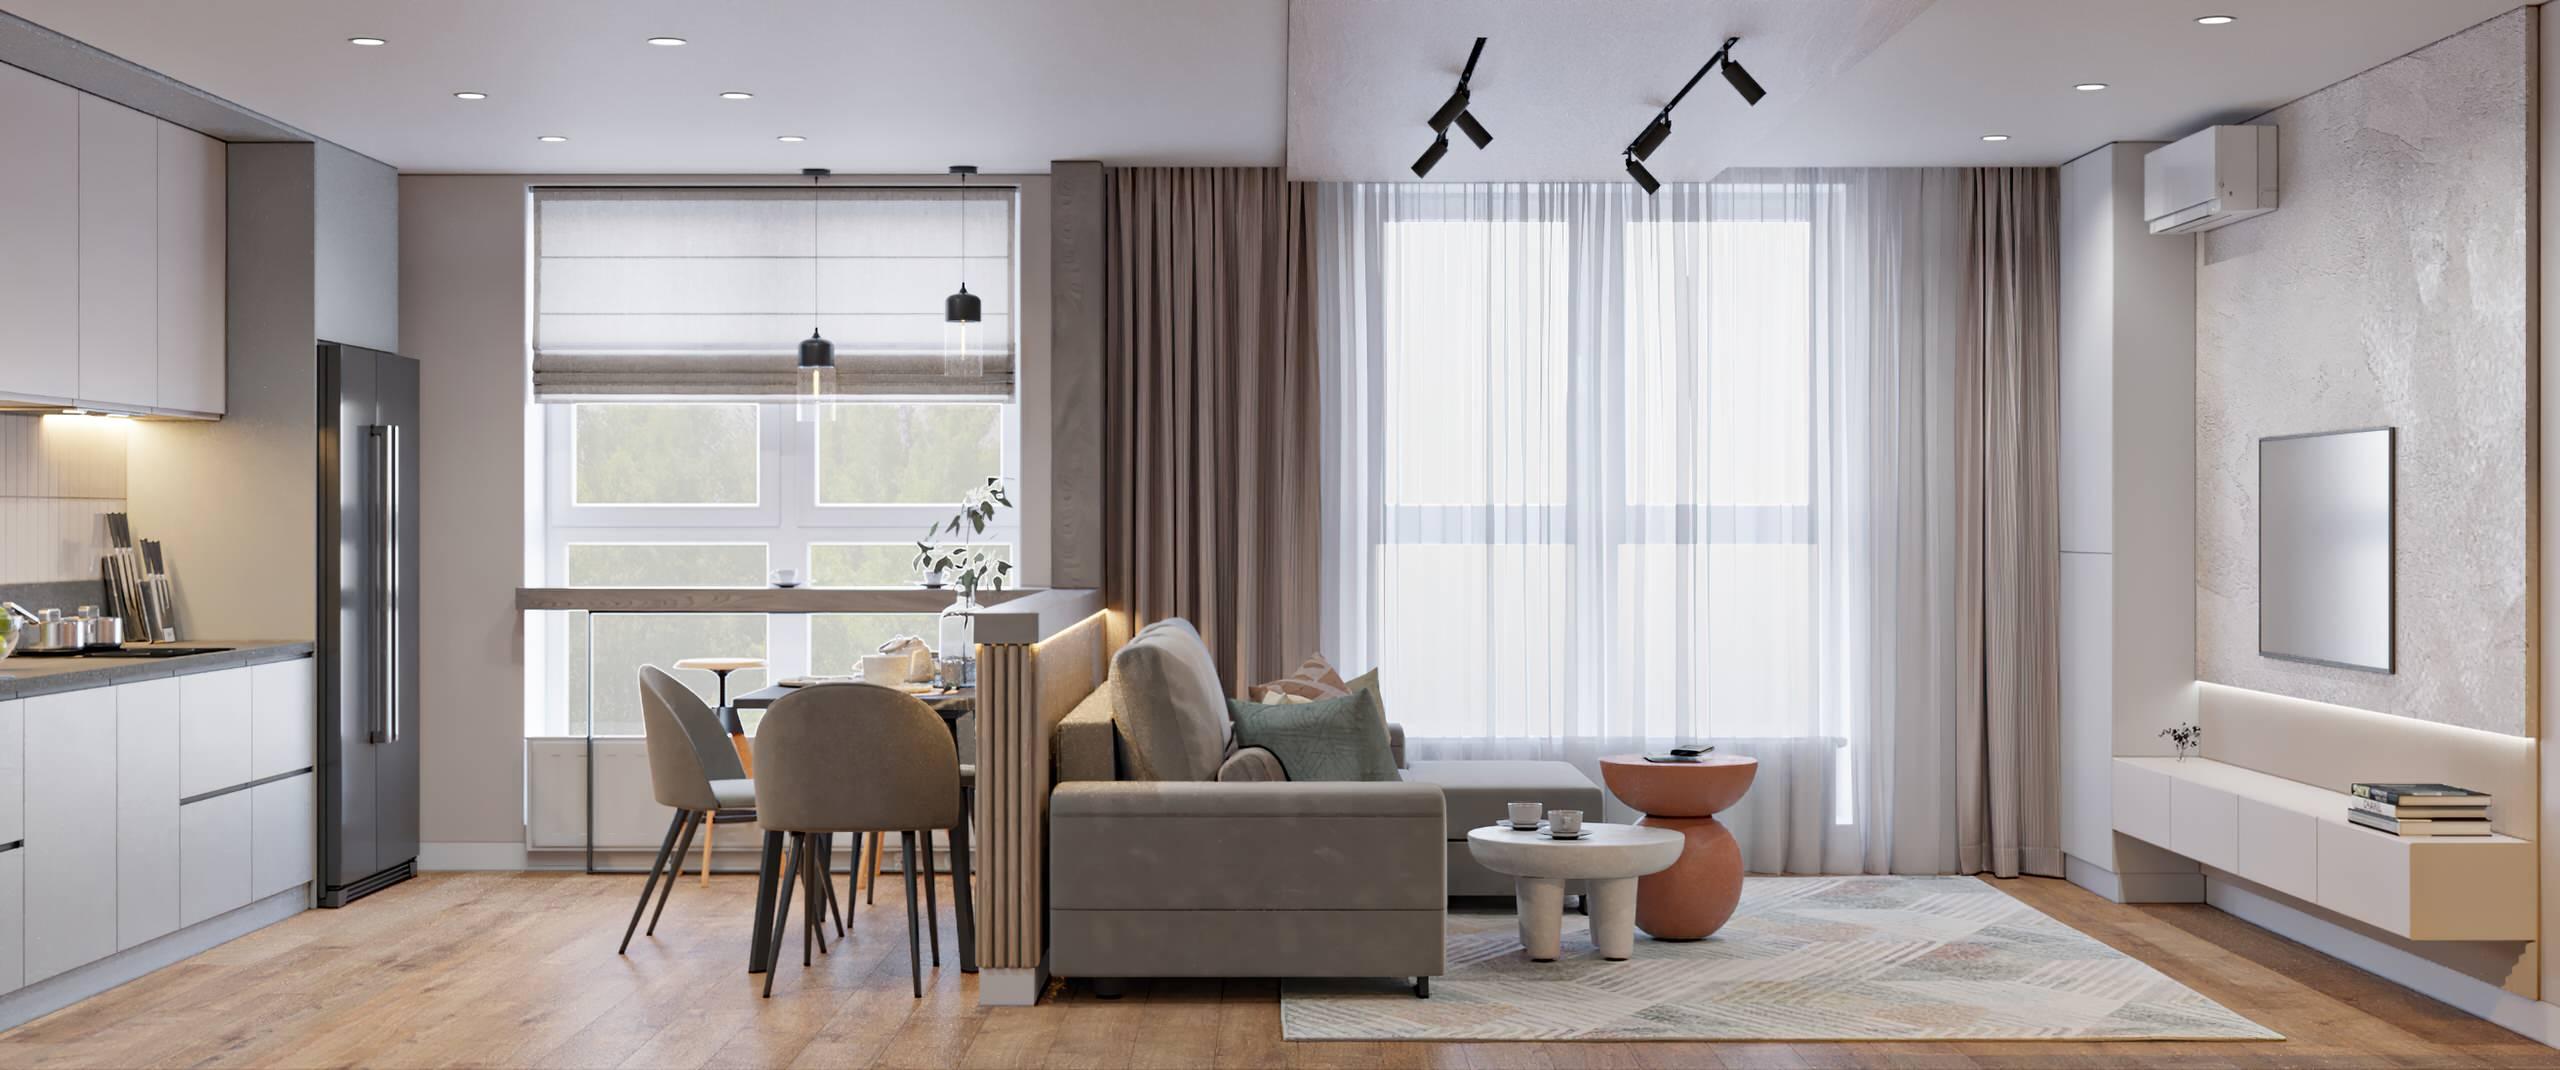 Интерьер гостиной cветовыми линиями, жалюзи и вертикальными жалюзи в современном стиле